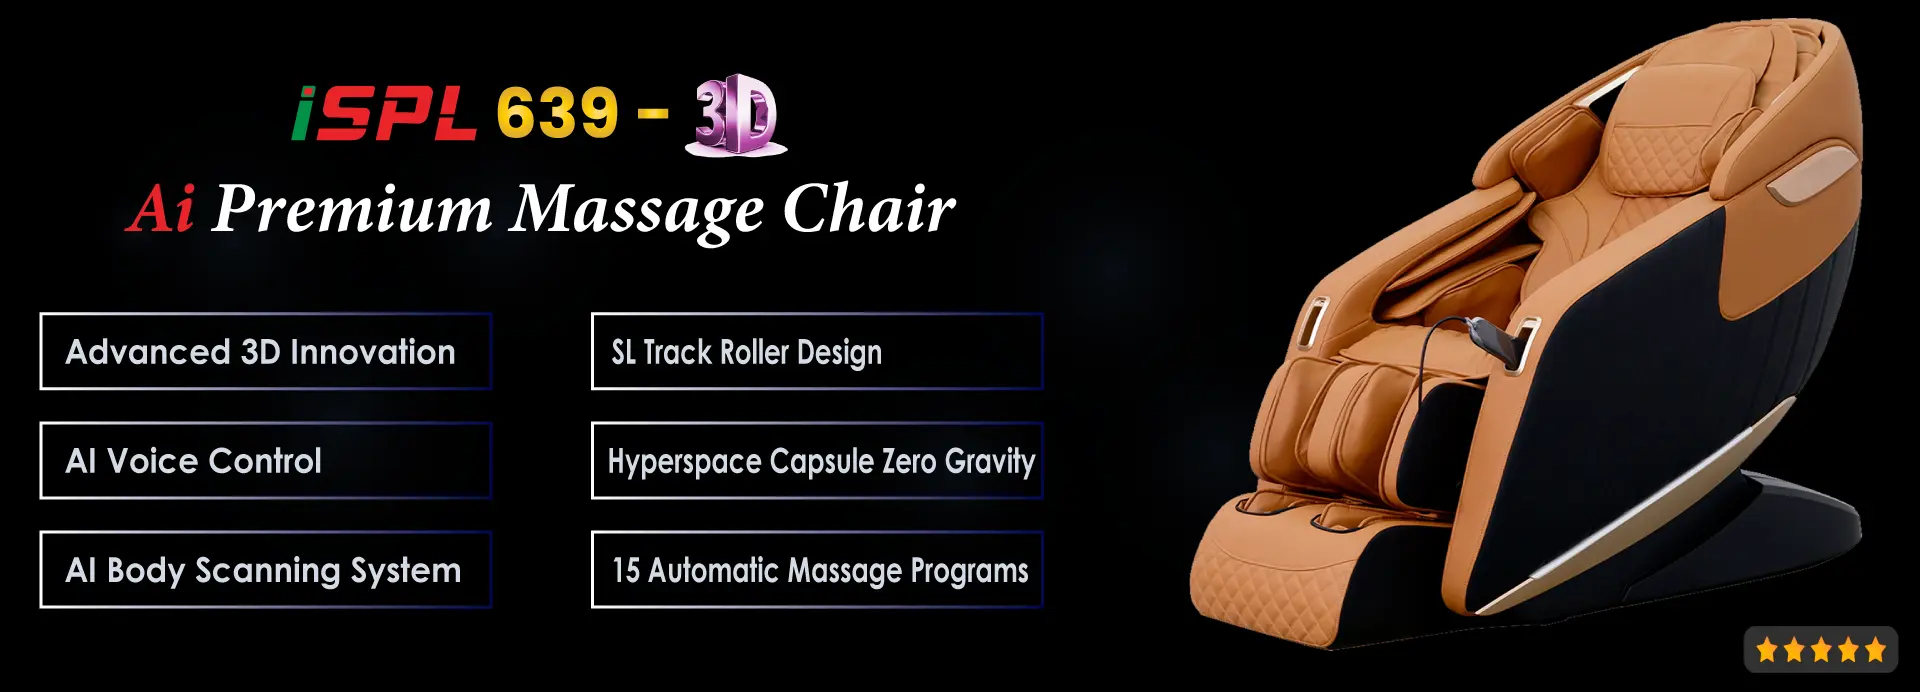 ISPL 639-3D Massage Chair